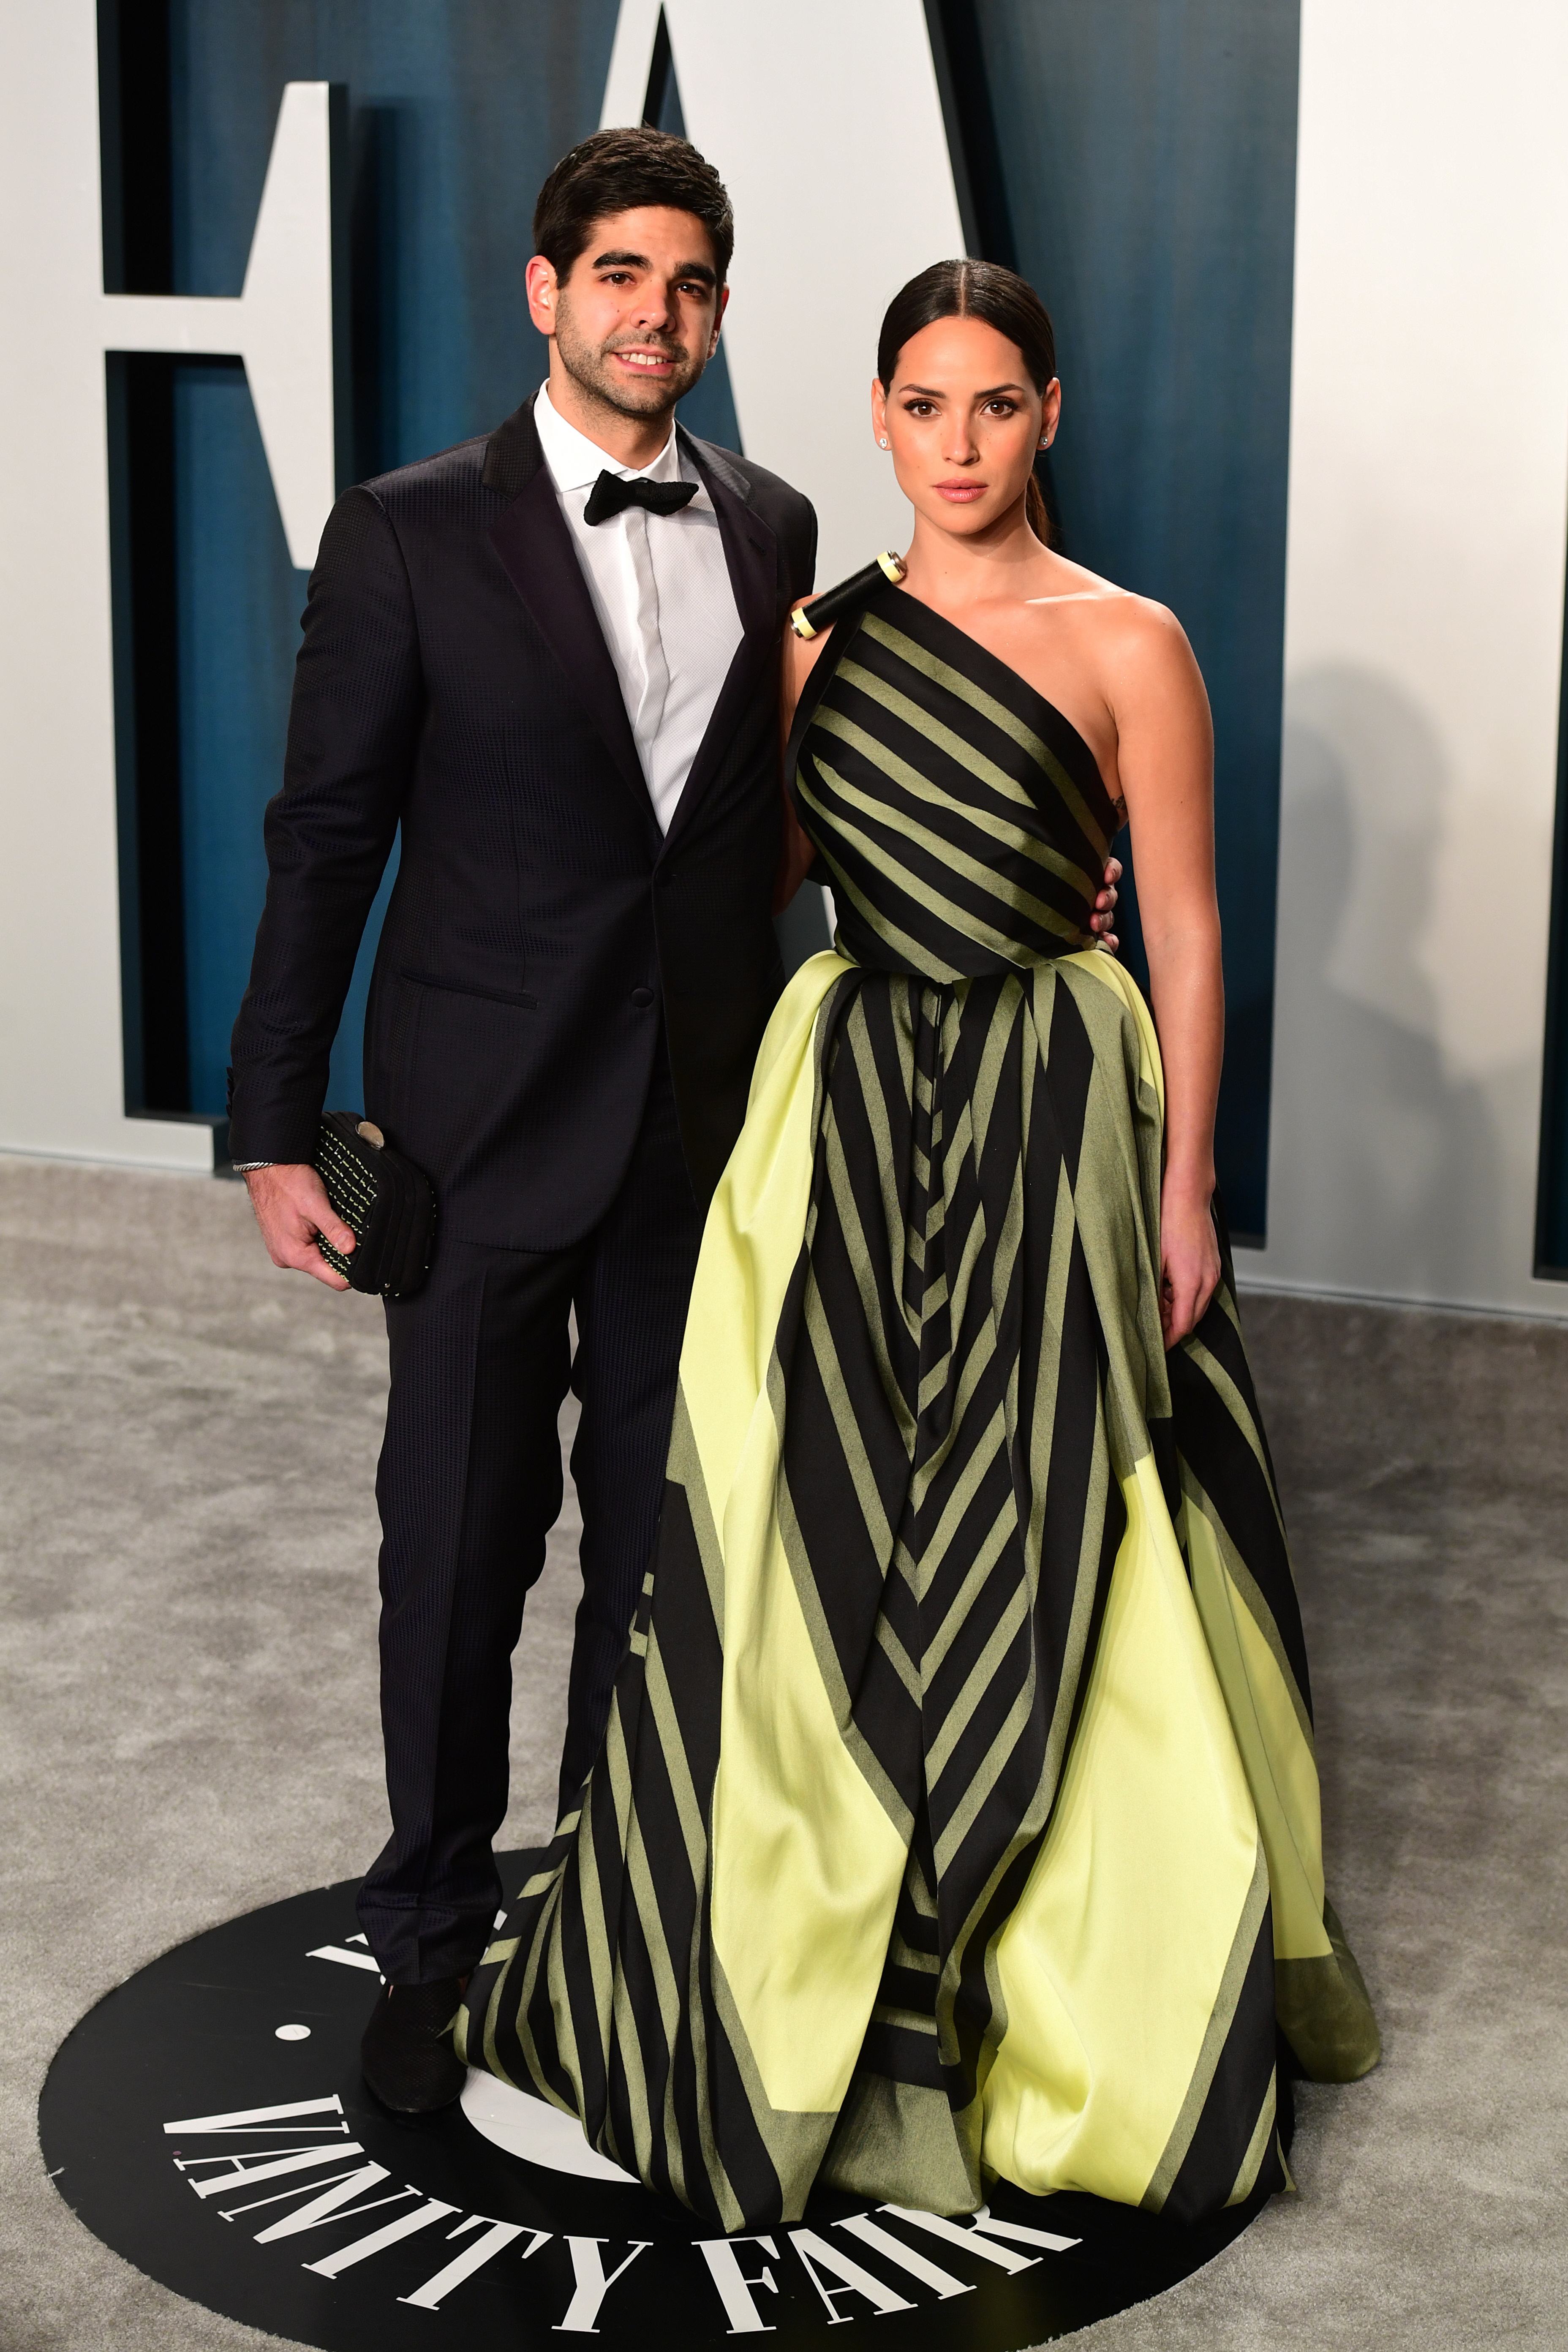 Edgardo Canales y Adria Arjona en febrero de 2020 en Beverly Hills, Los Angeles, California | Fuente: Getty Images